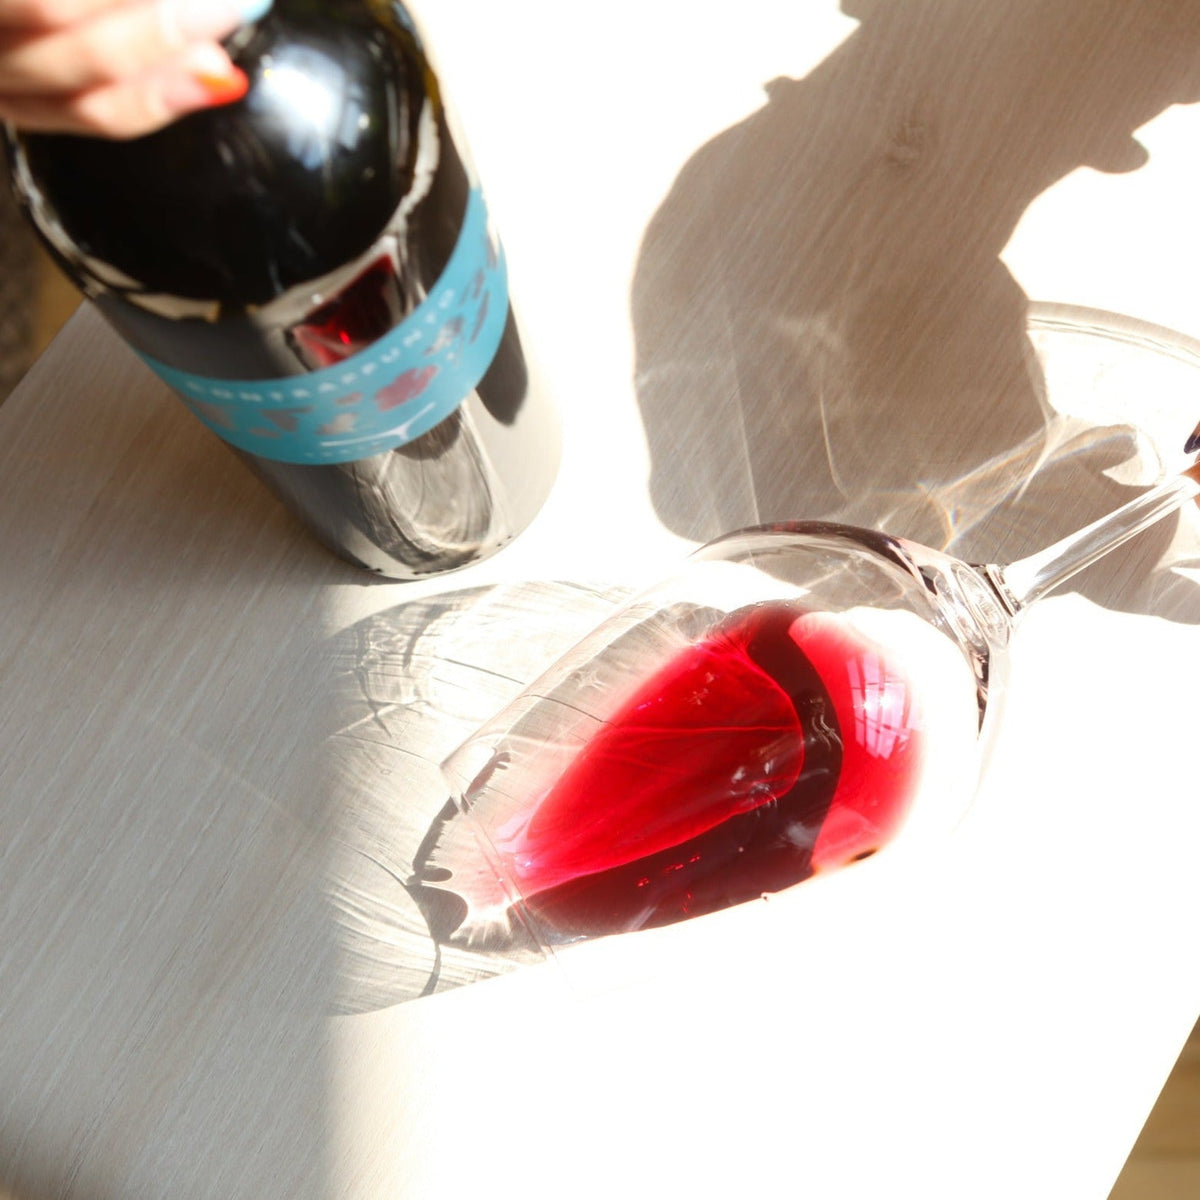 Contrappunto 2019 - Rouge - Domaine Tunia - Le vin dans les voiles